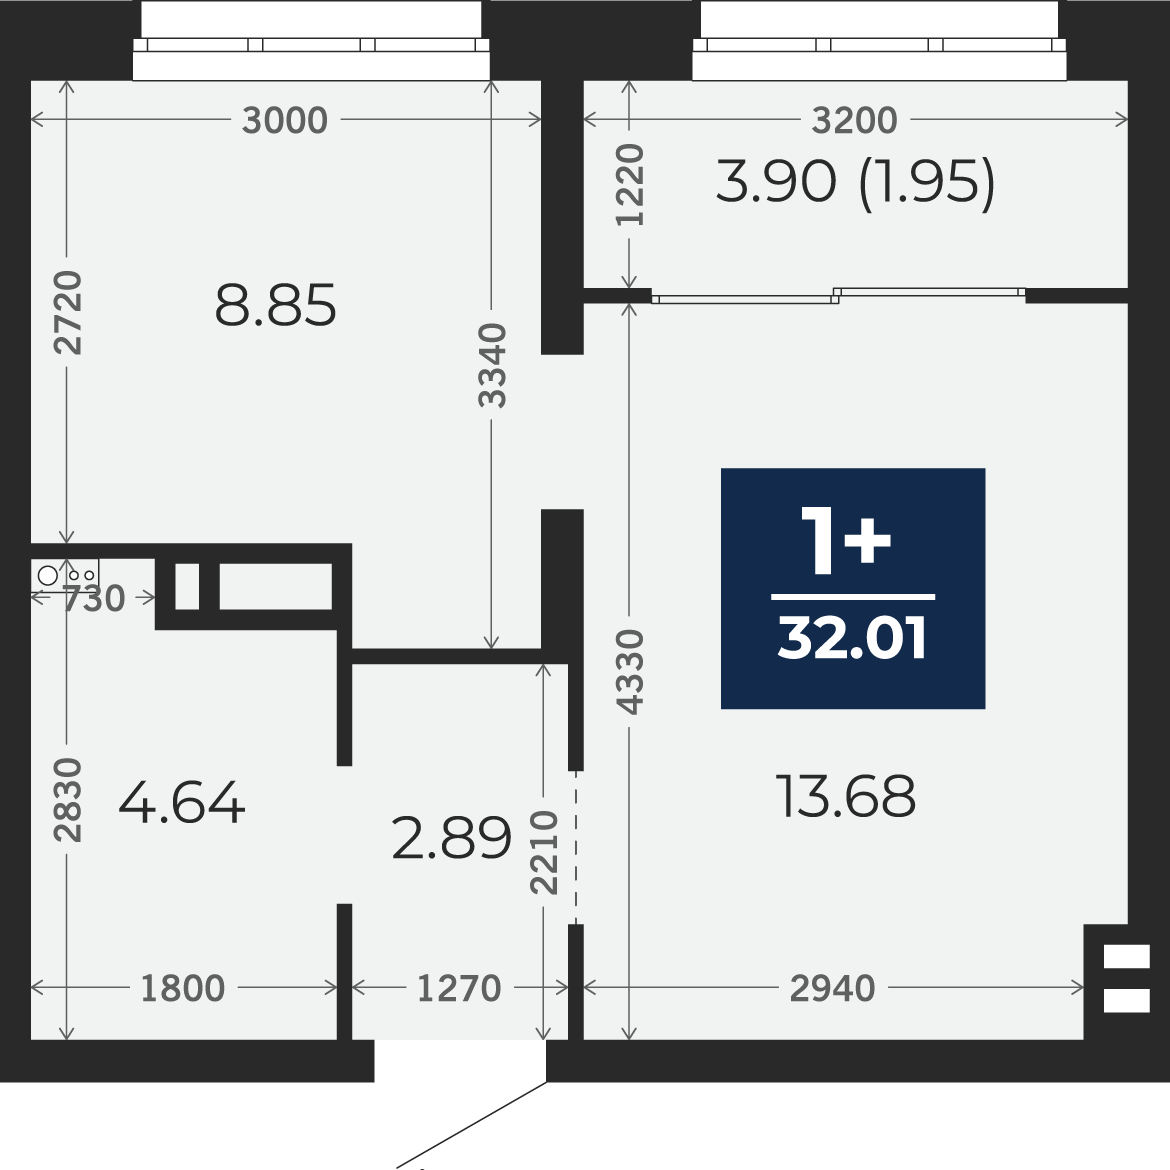 Квартира № 252, 1-комнатная, 32.01 кв. м, 6 этаж